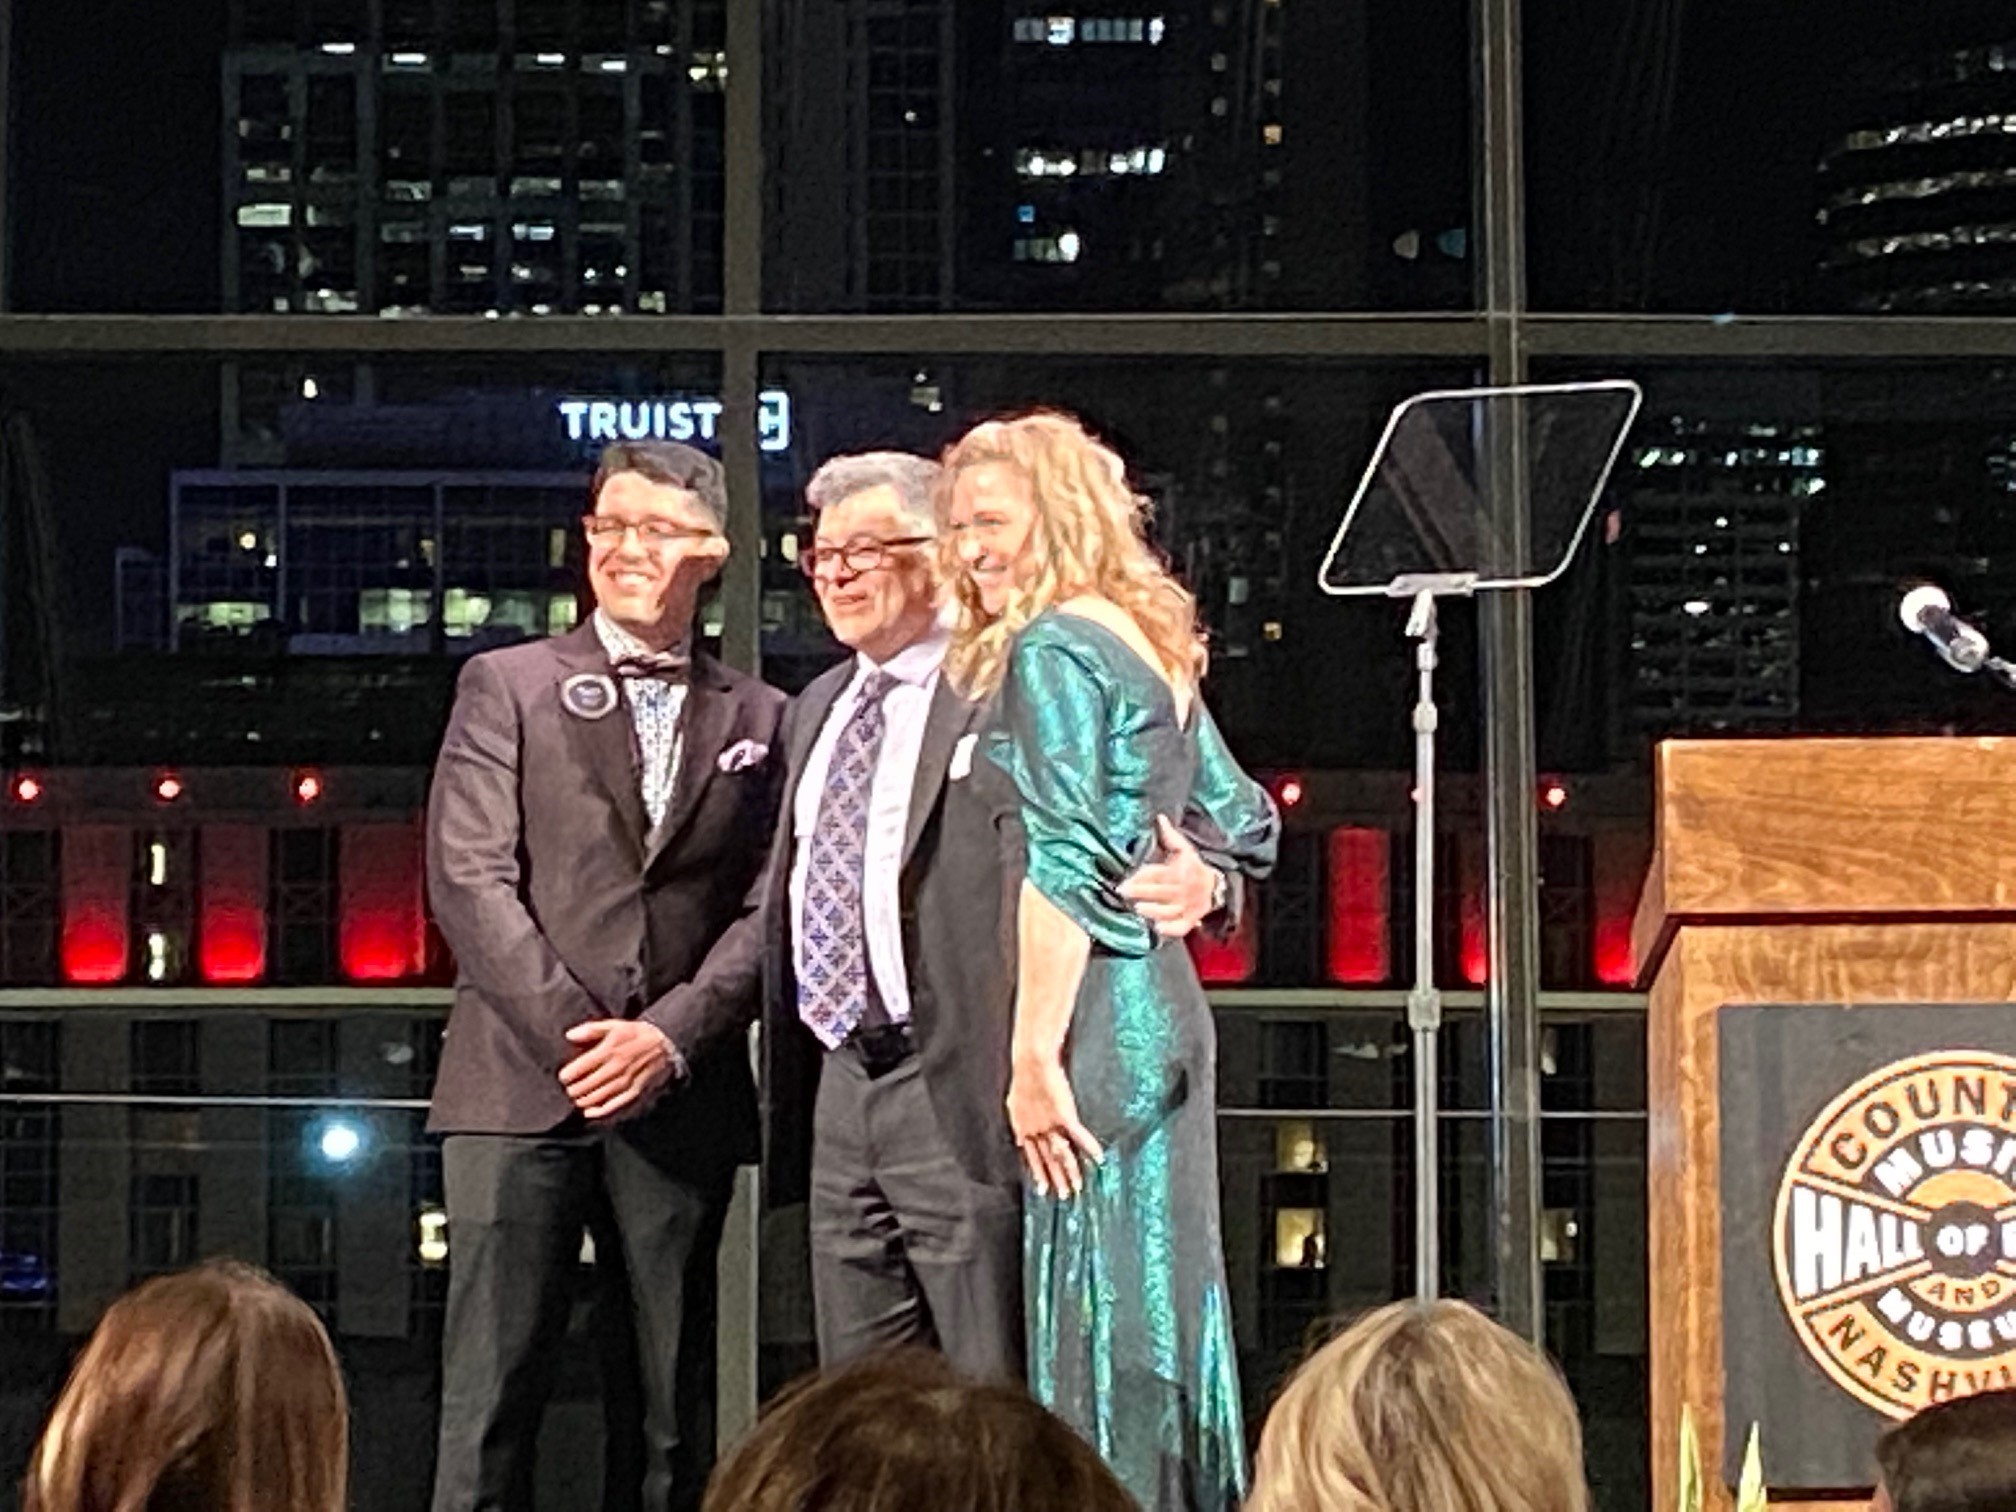 Steve Karp on stage winning award